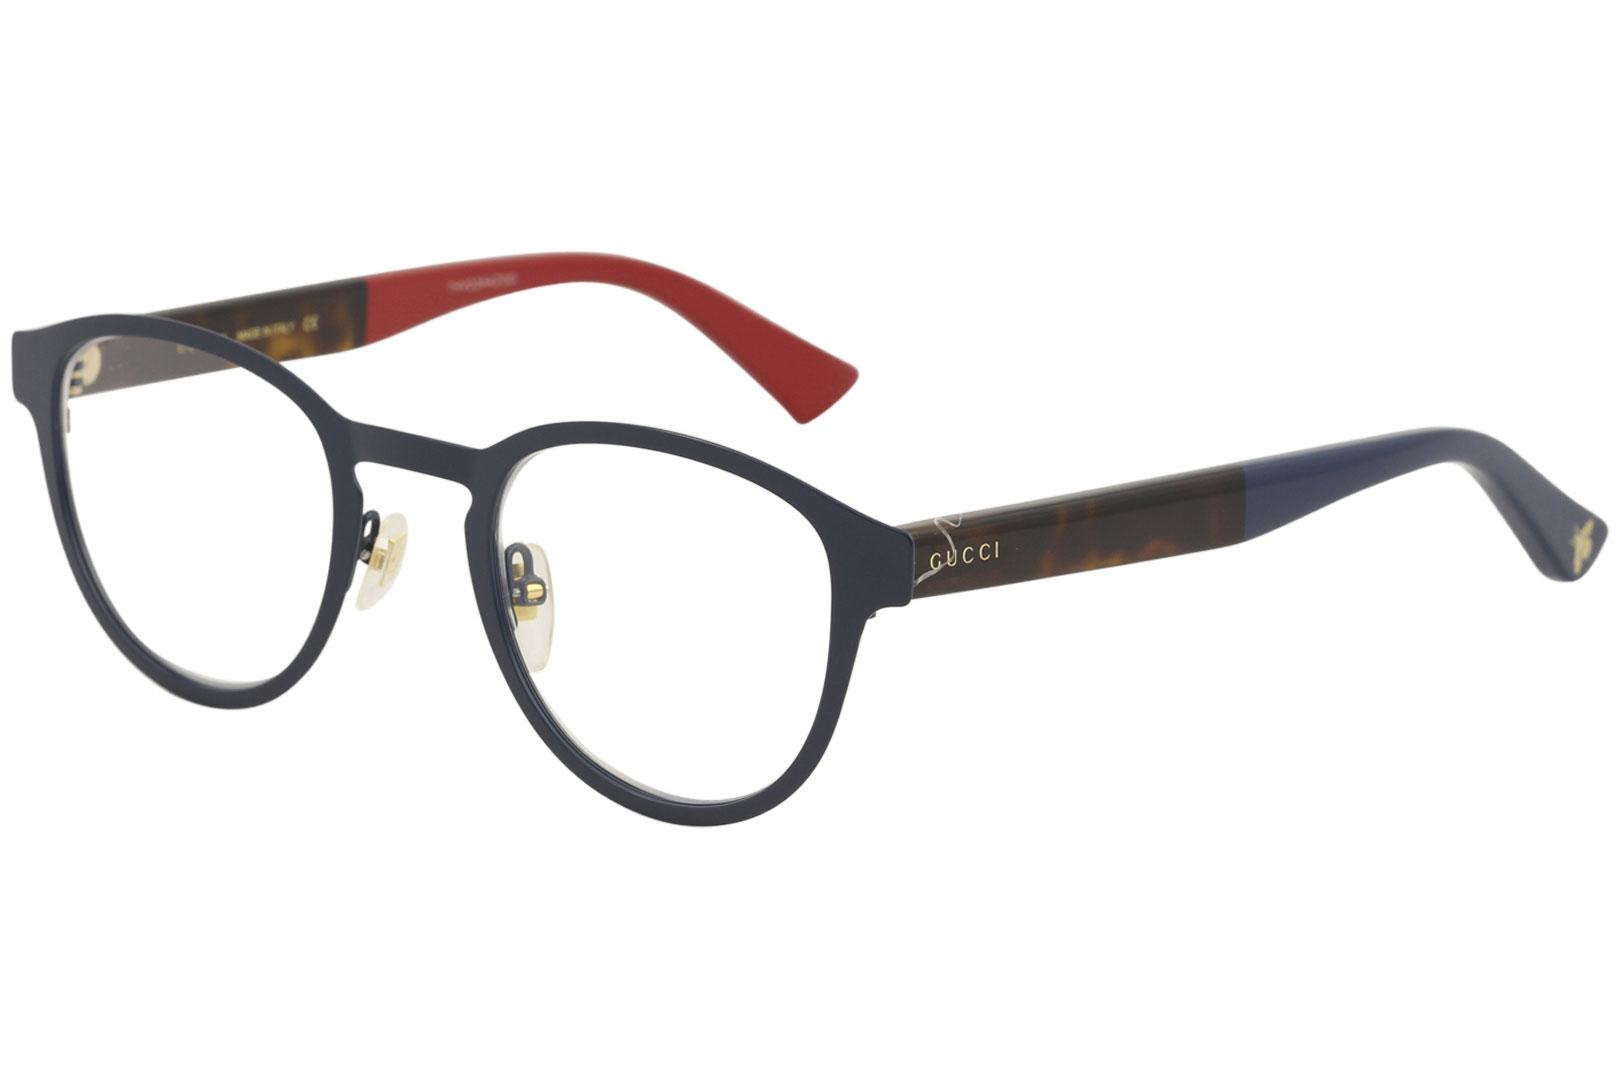 Gucci Men's Eyeglasses GG0161O GG/0161/O Full Rim Optical Frame - Blue/Havana   003 - Lens 48 Bridge 23 Temple 145mm